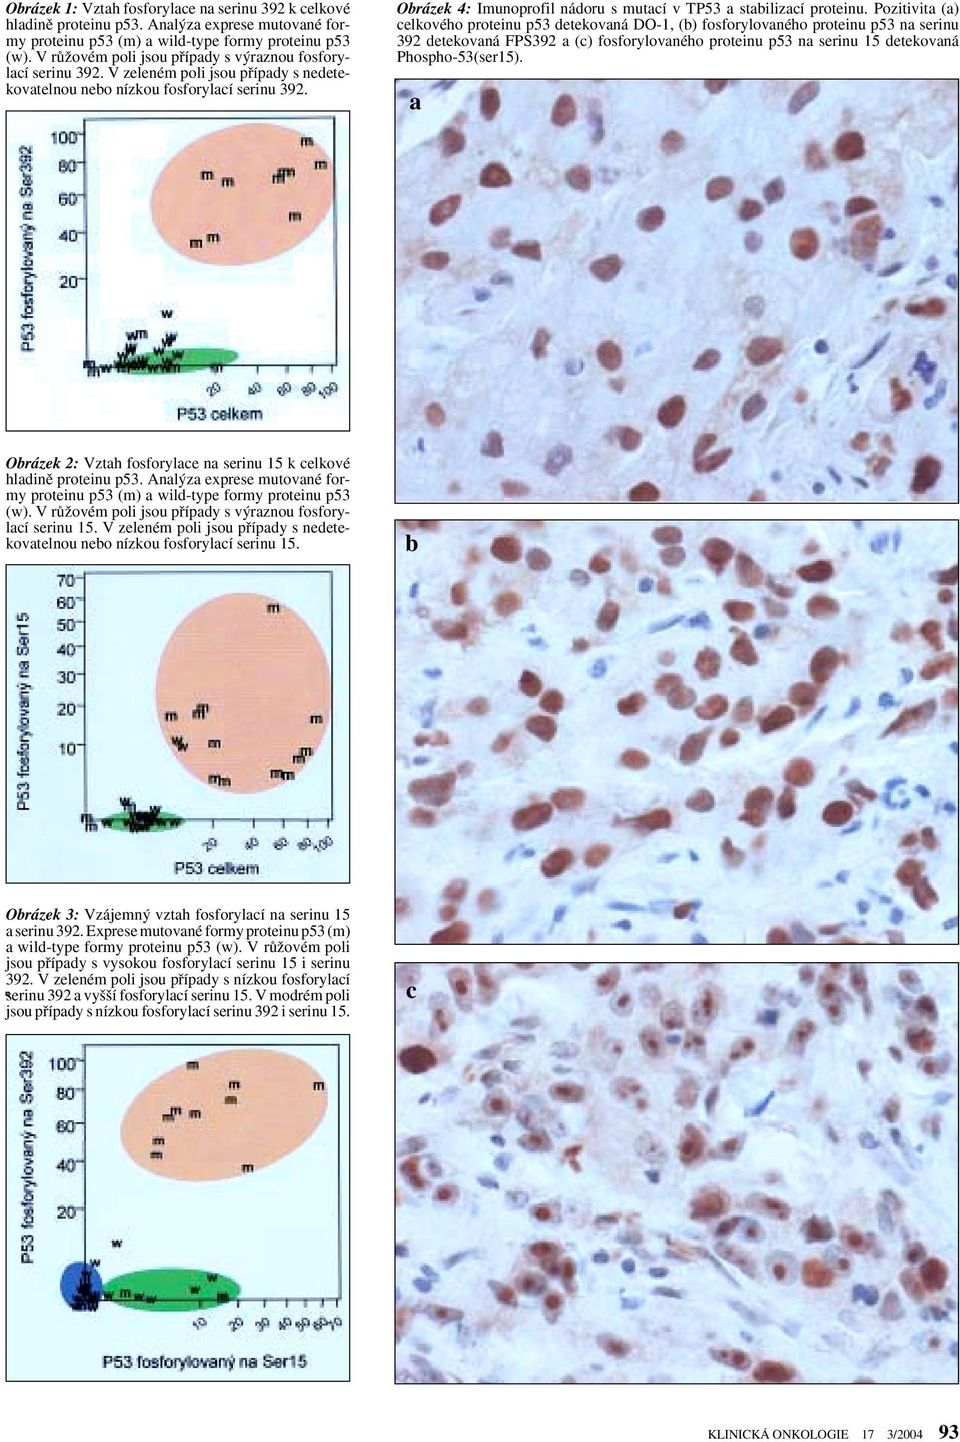 Obrázek 4: Imunoprofil nádoru s mutací v TP53 a stabilizací proteinu.